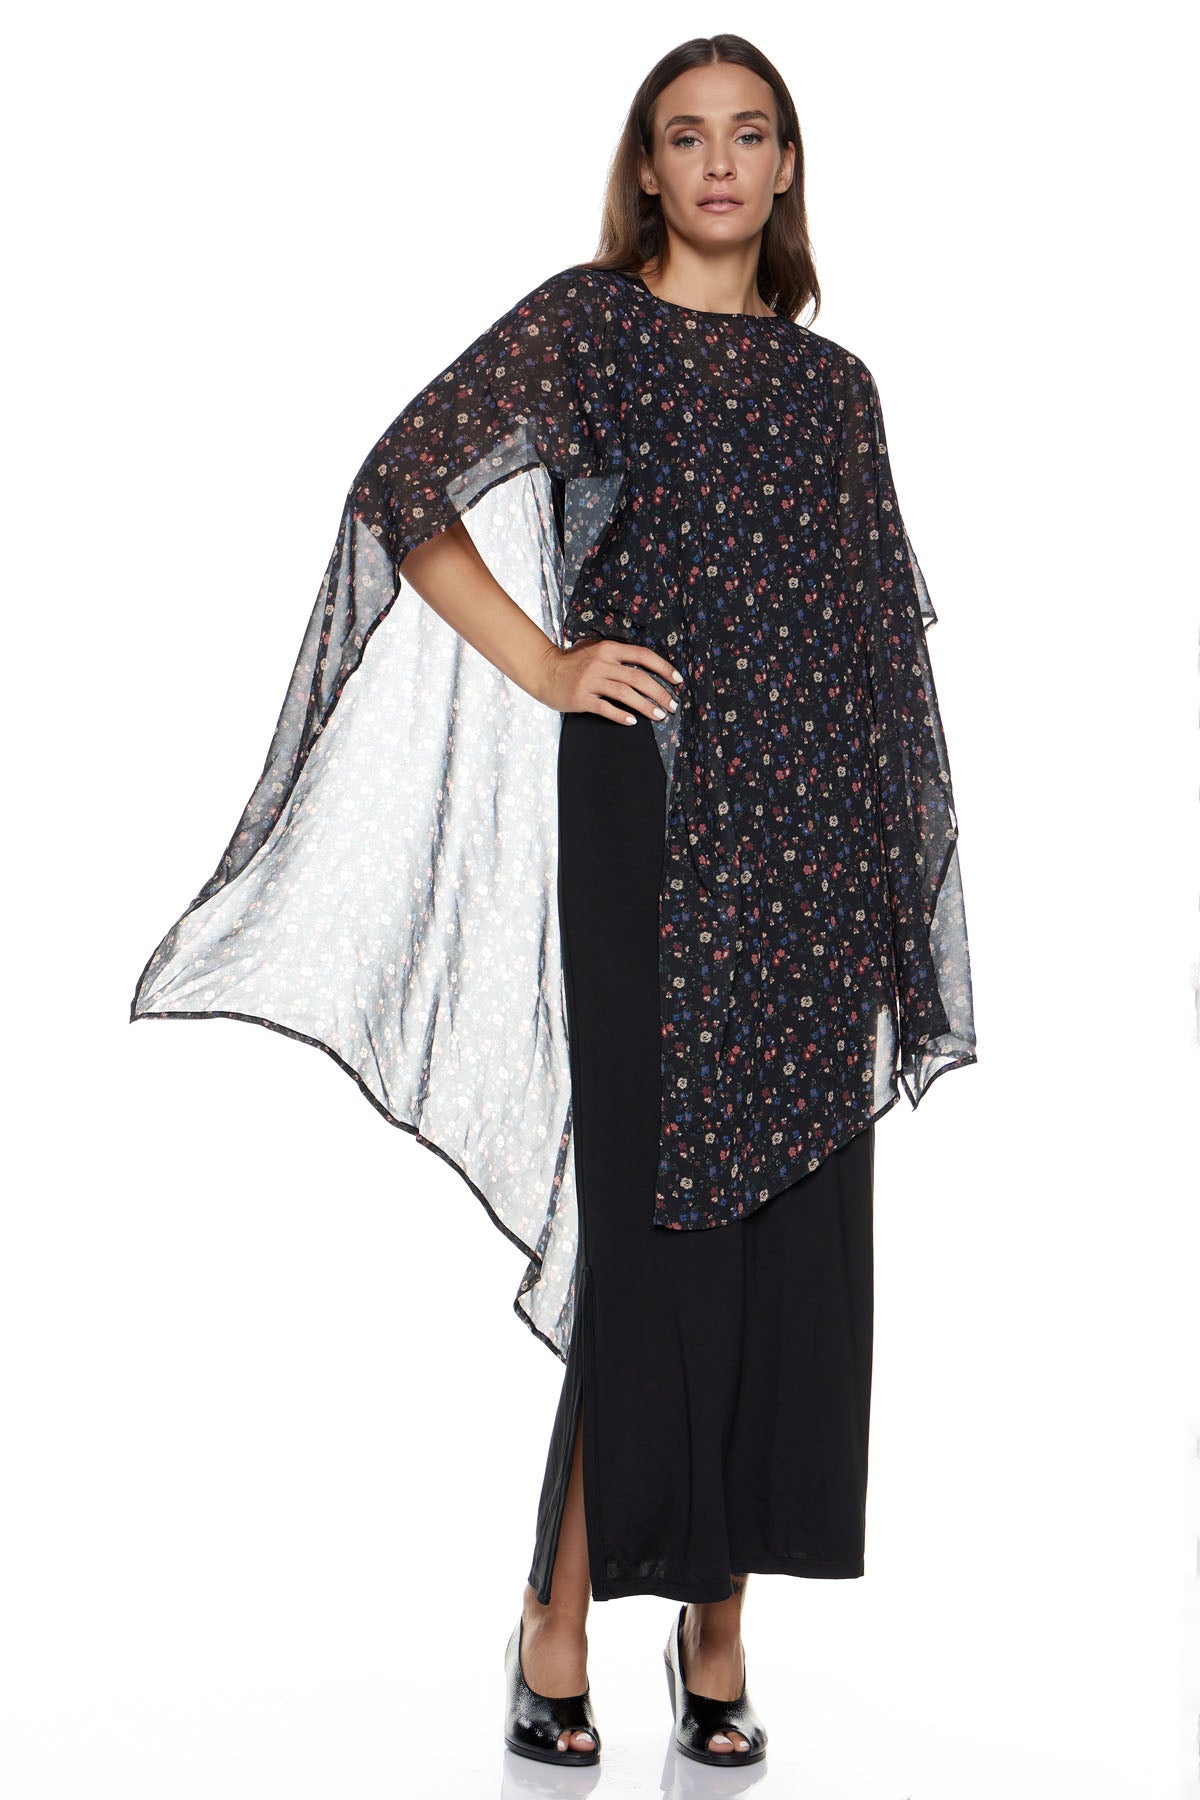 Συνδυασμός Φόρεμα (Basics) Φατιόνα & Μακρυά Εσάρπα Λολίτα - Μαύρο με Floral Διαφάνεια